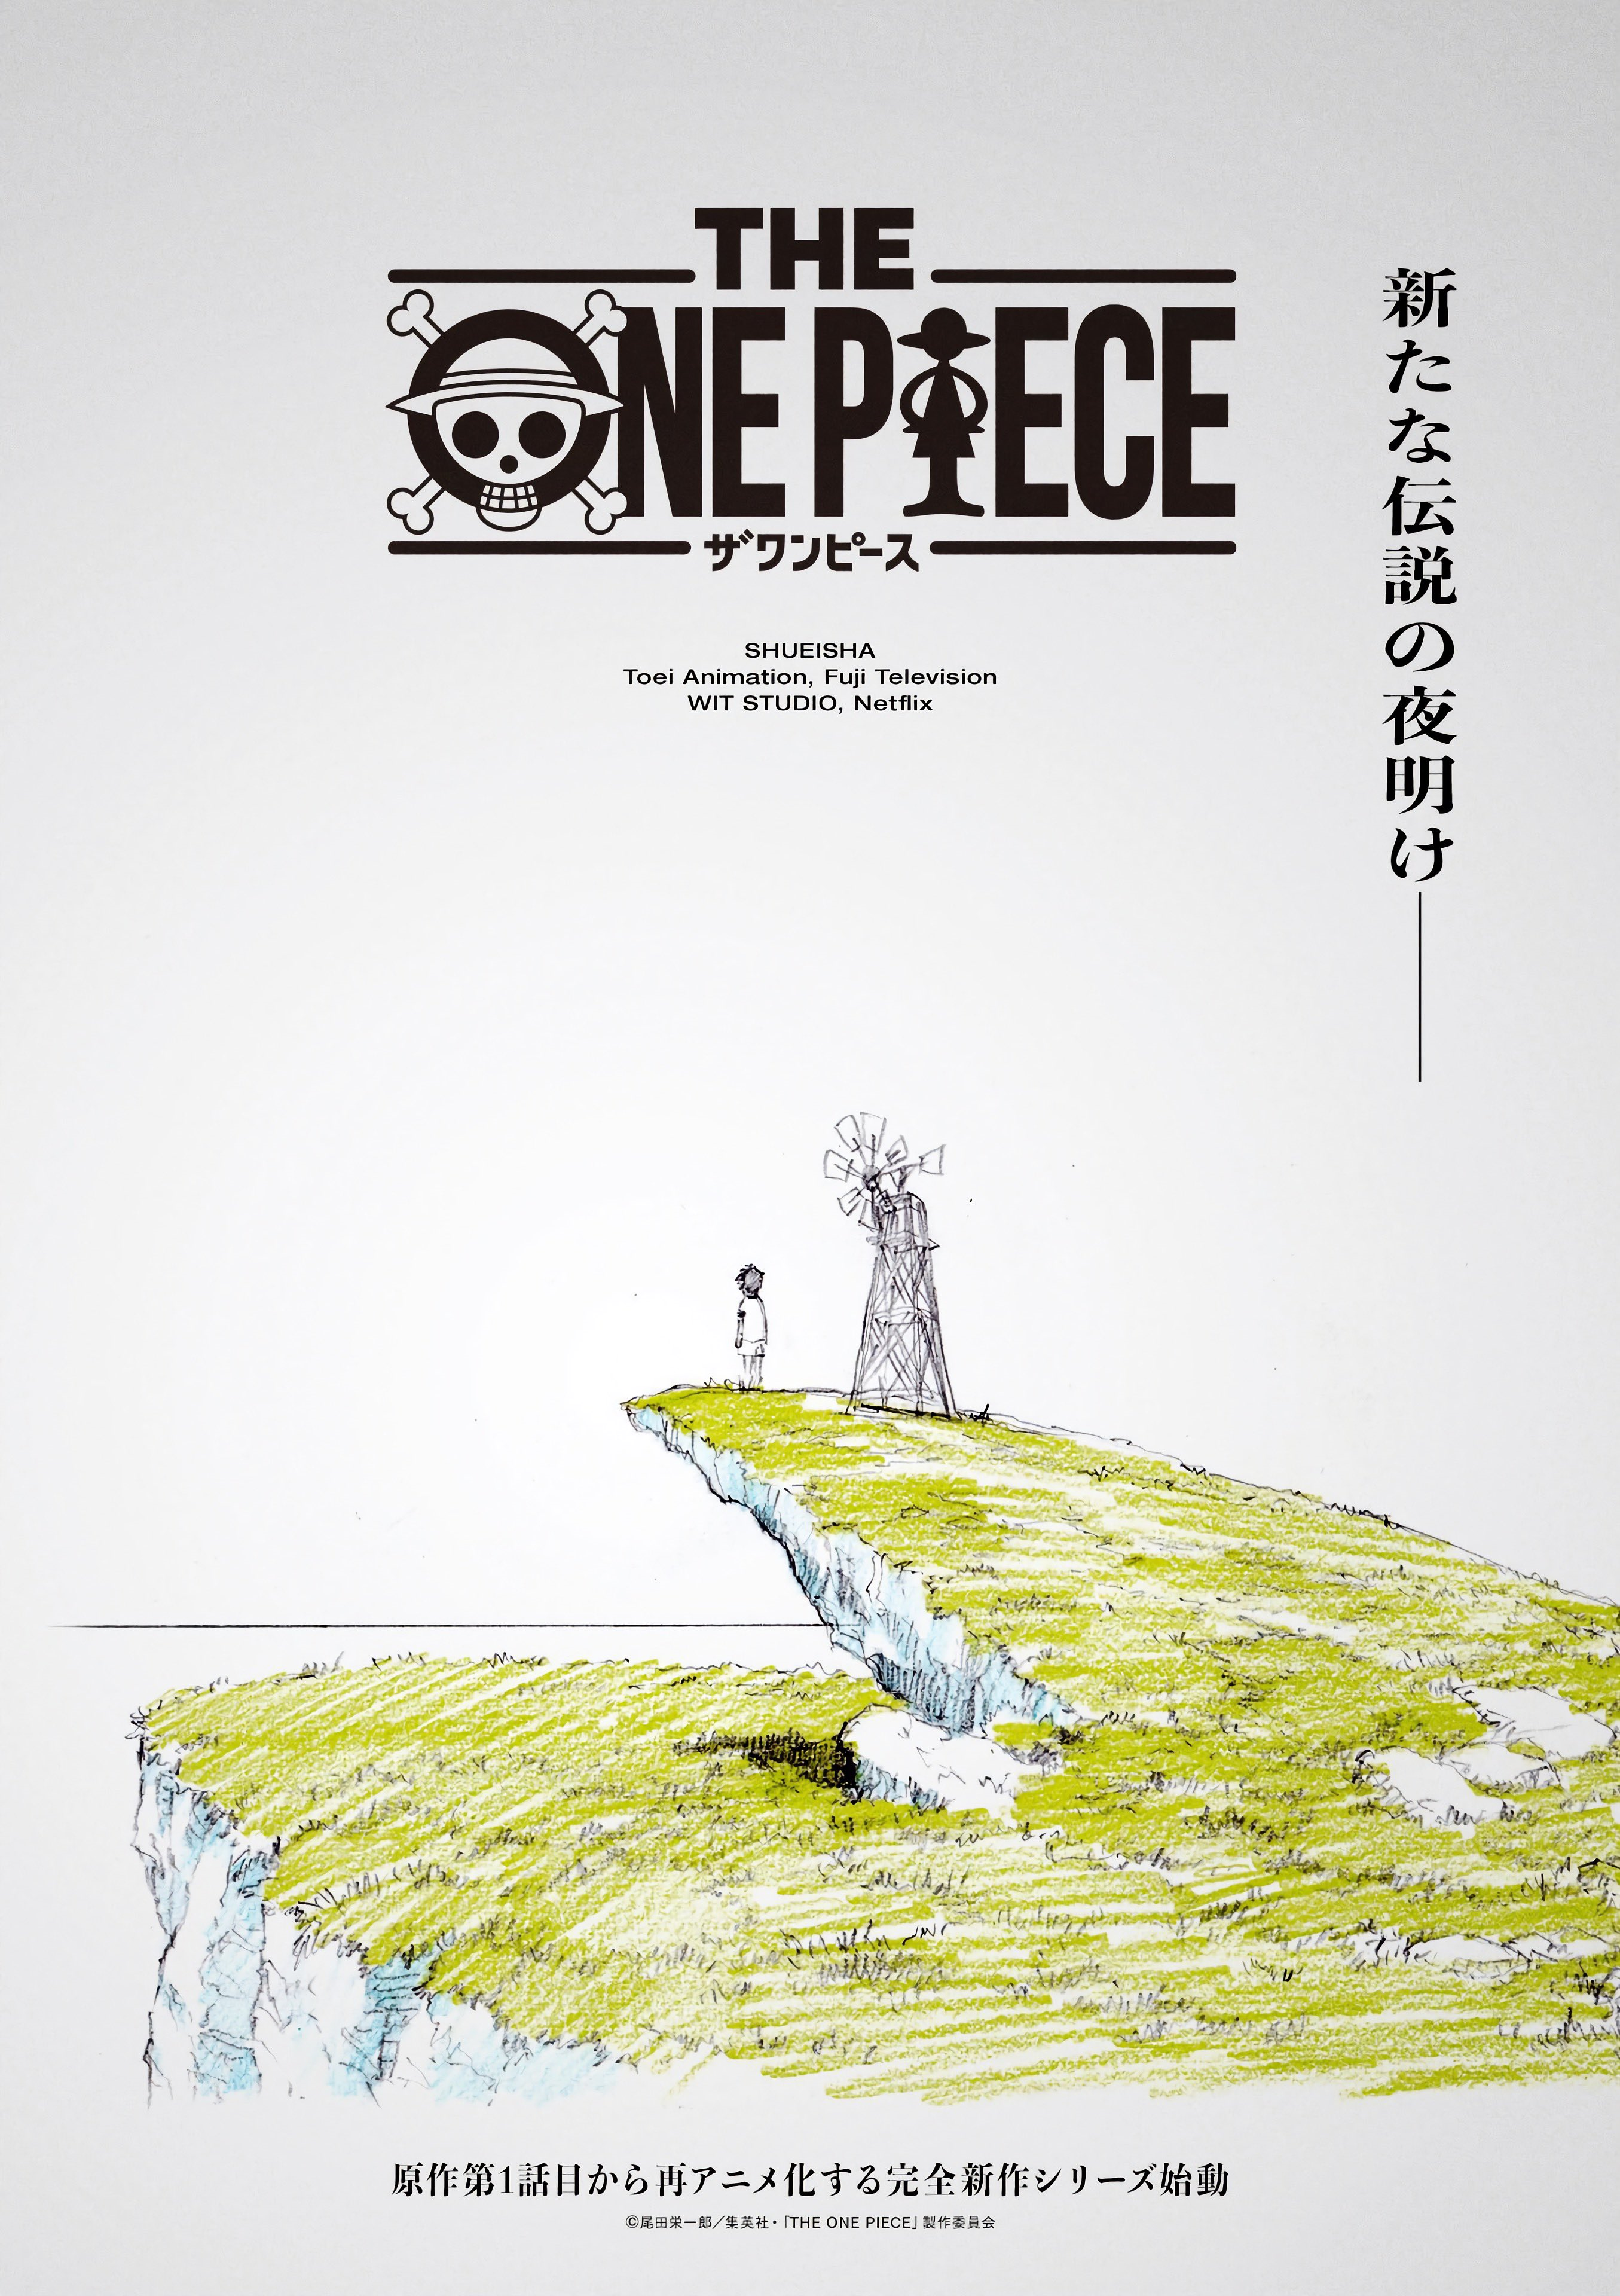 Cross Epoch, One Piece Wiki